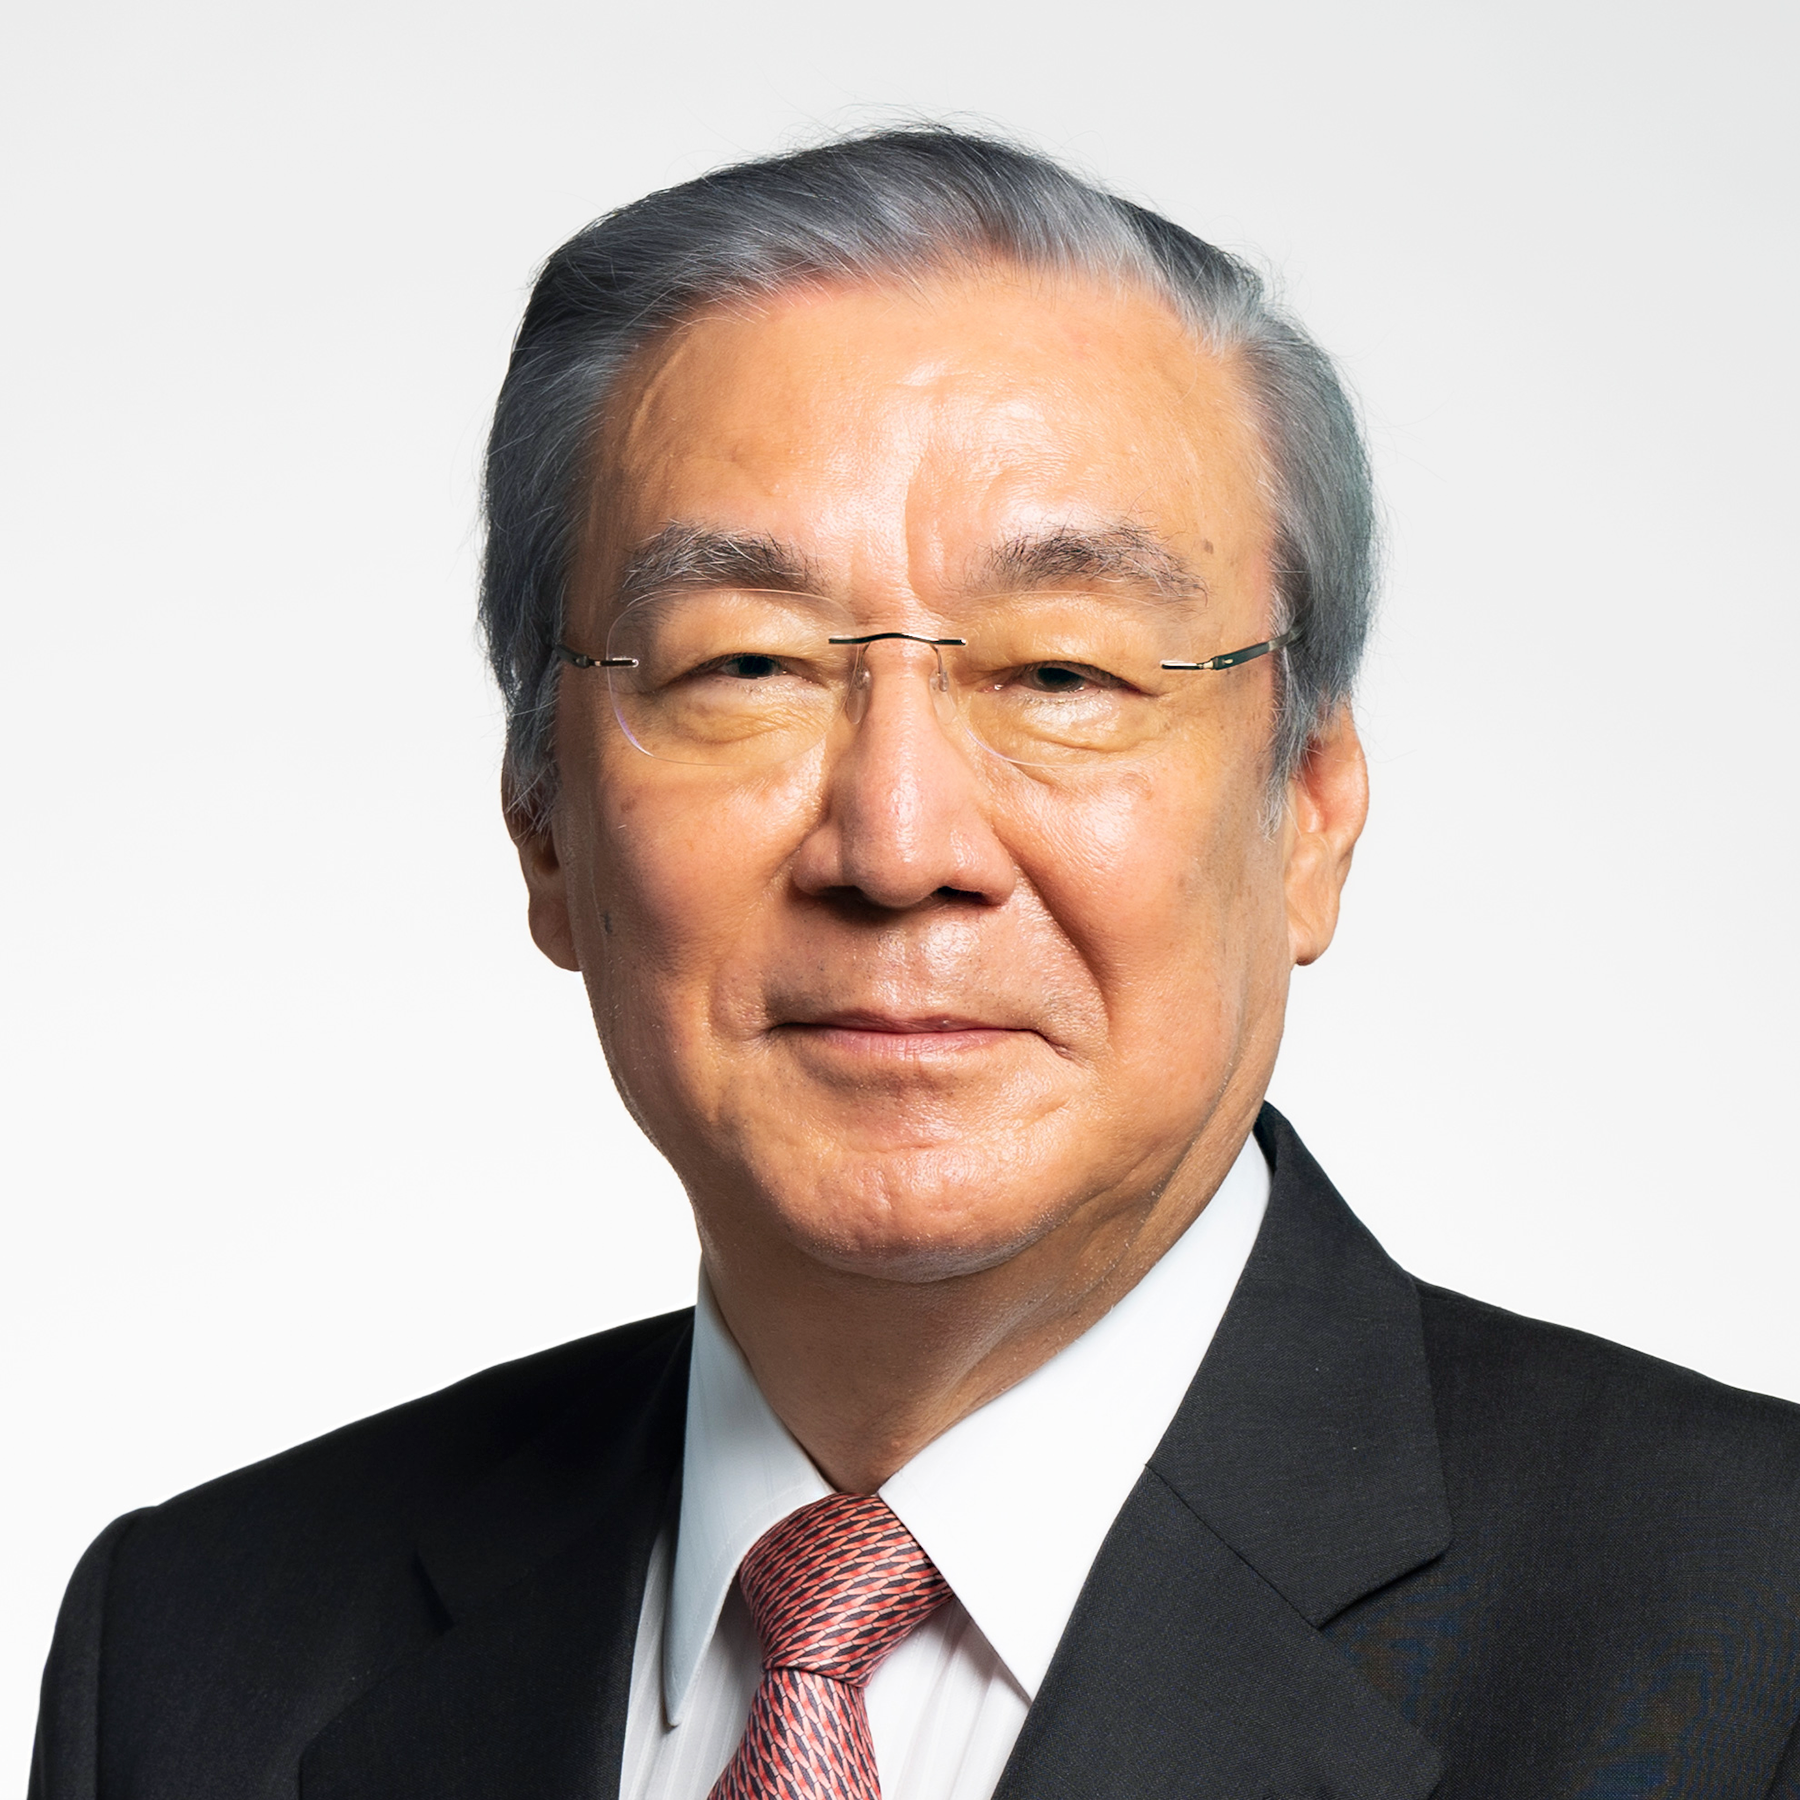 Tsunehiro Nakayama